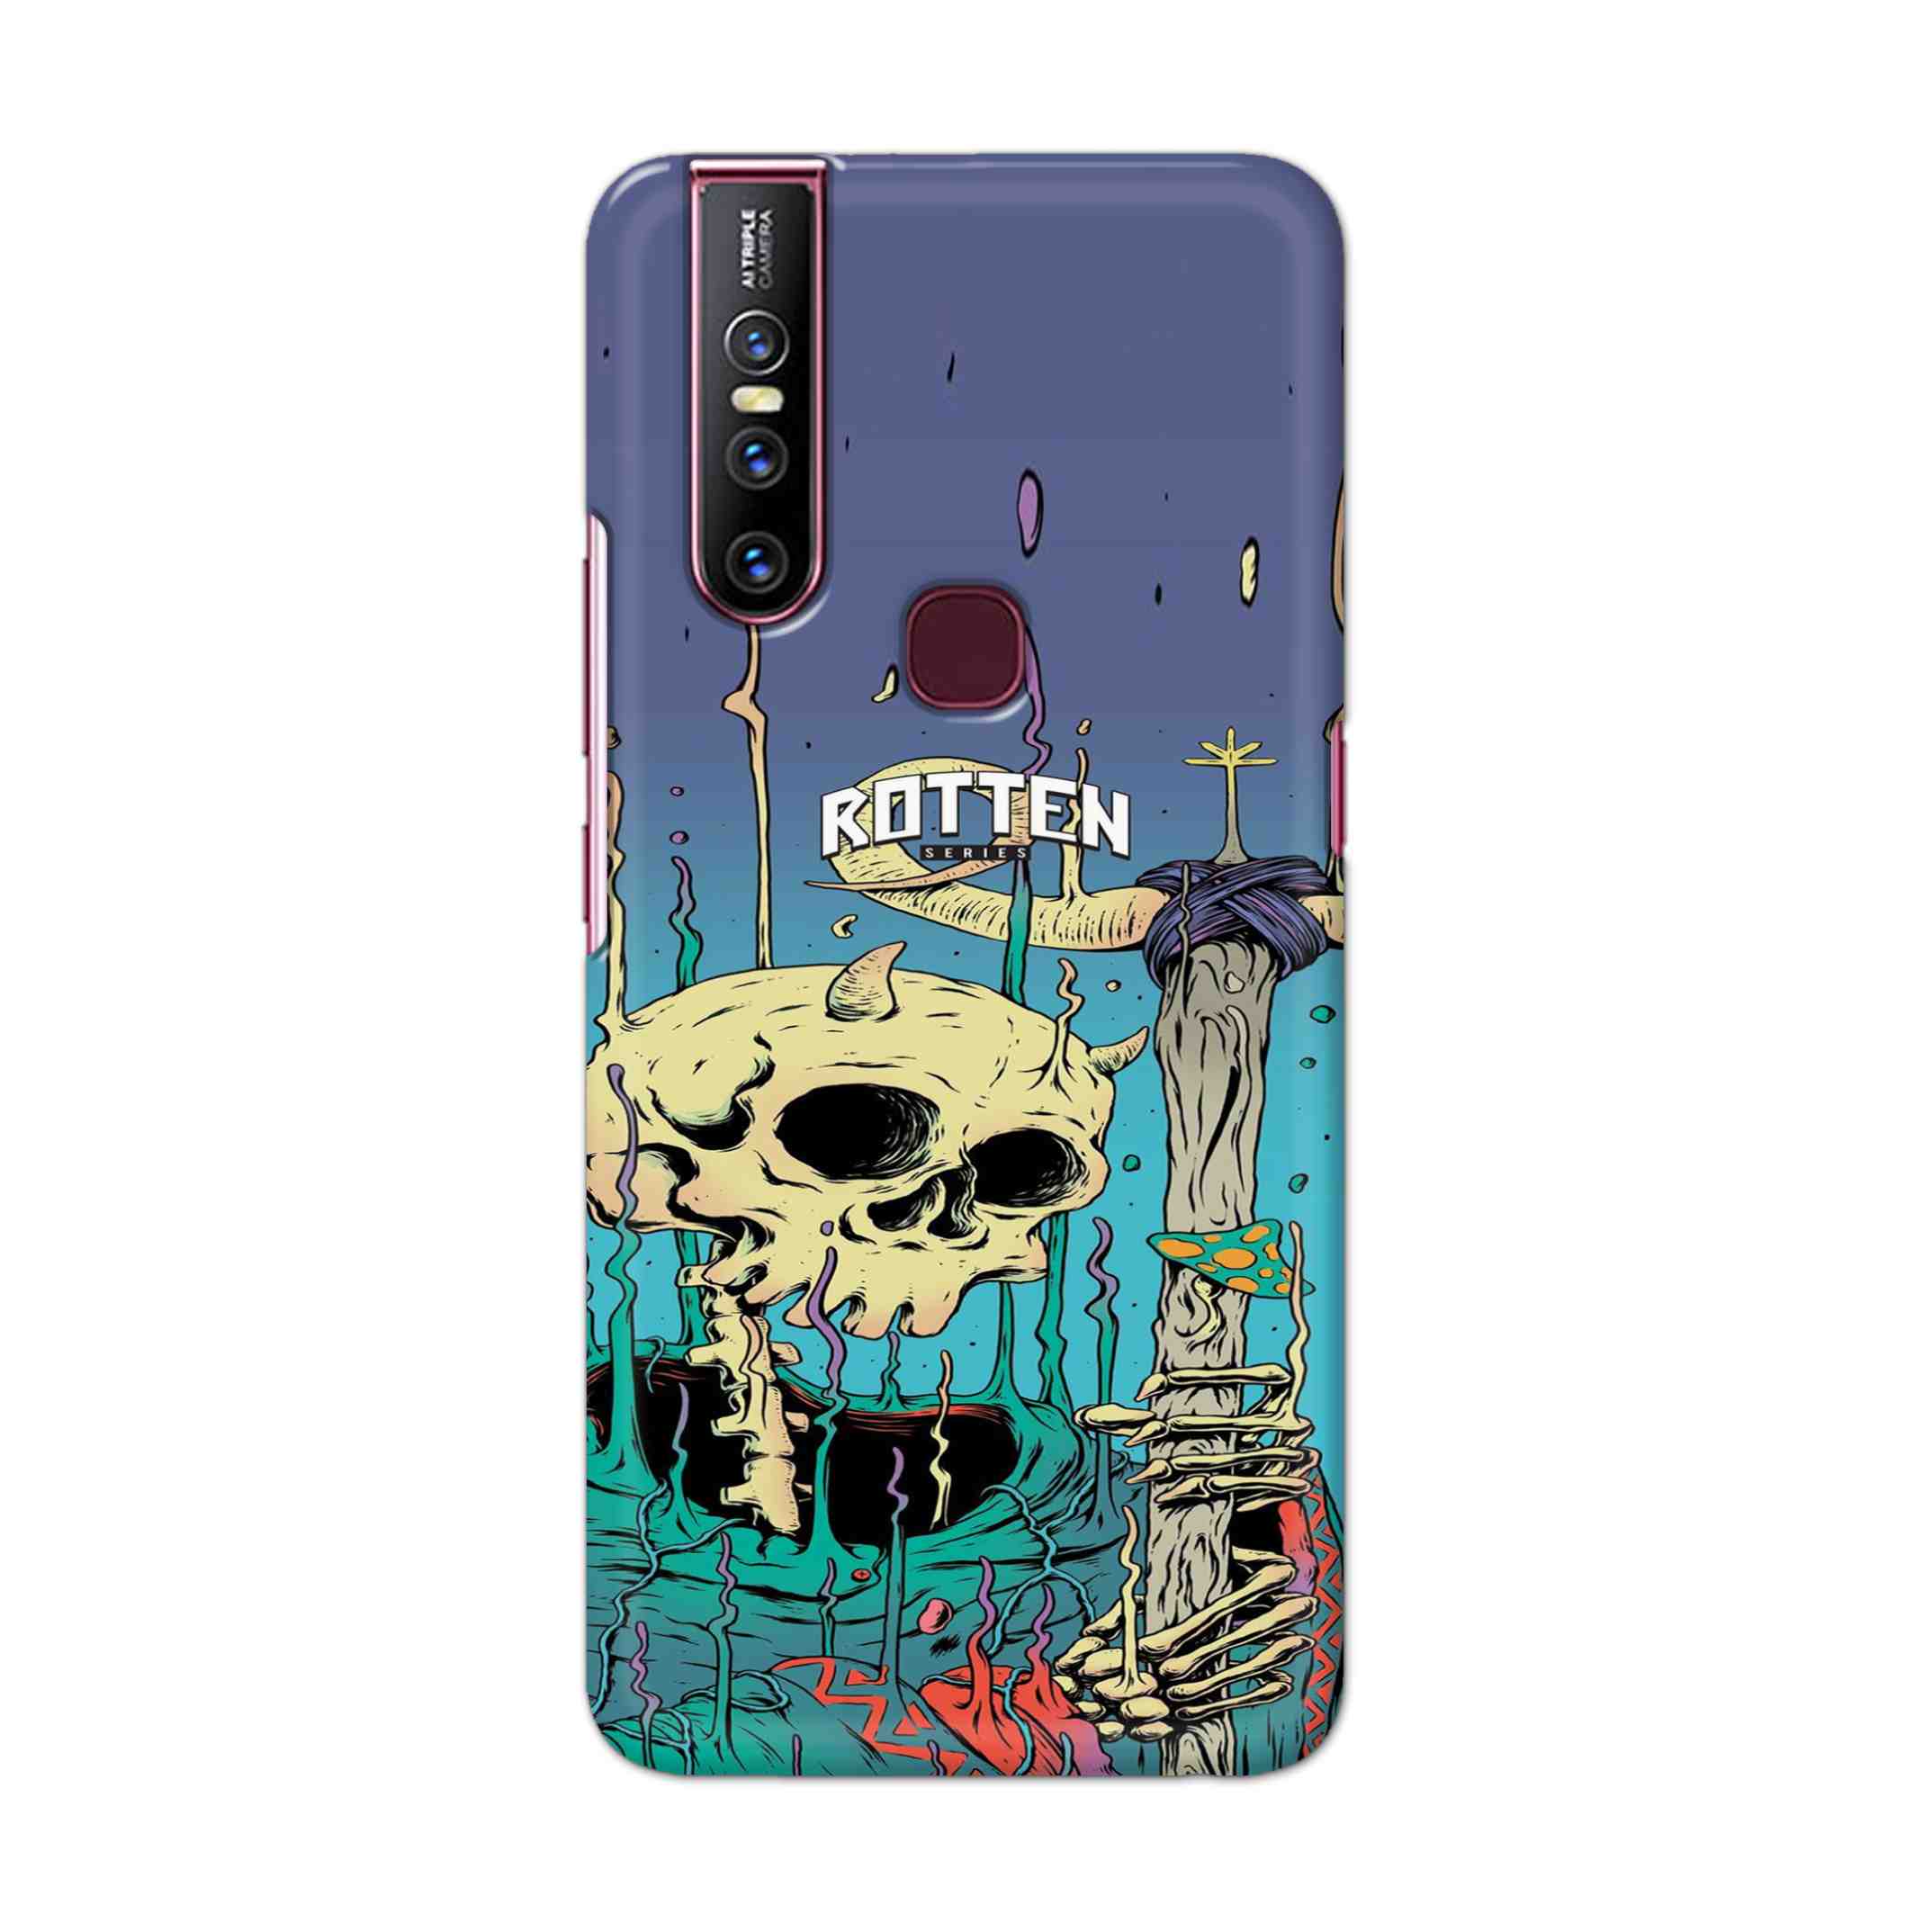 Buy Skull Hard Back Mobile Phone Case Cover For Vivo V15 Online